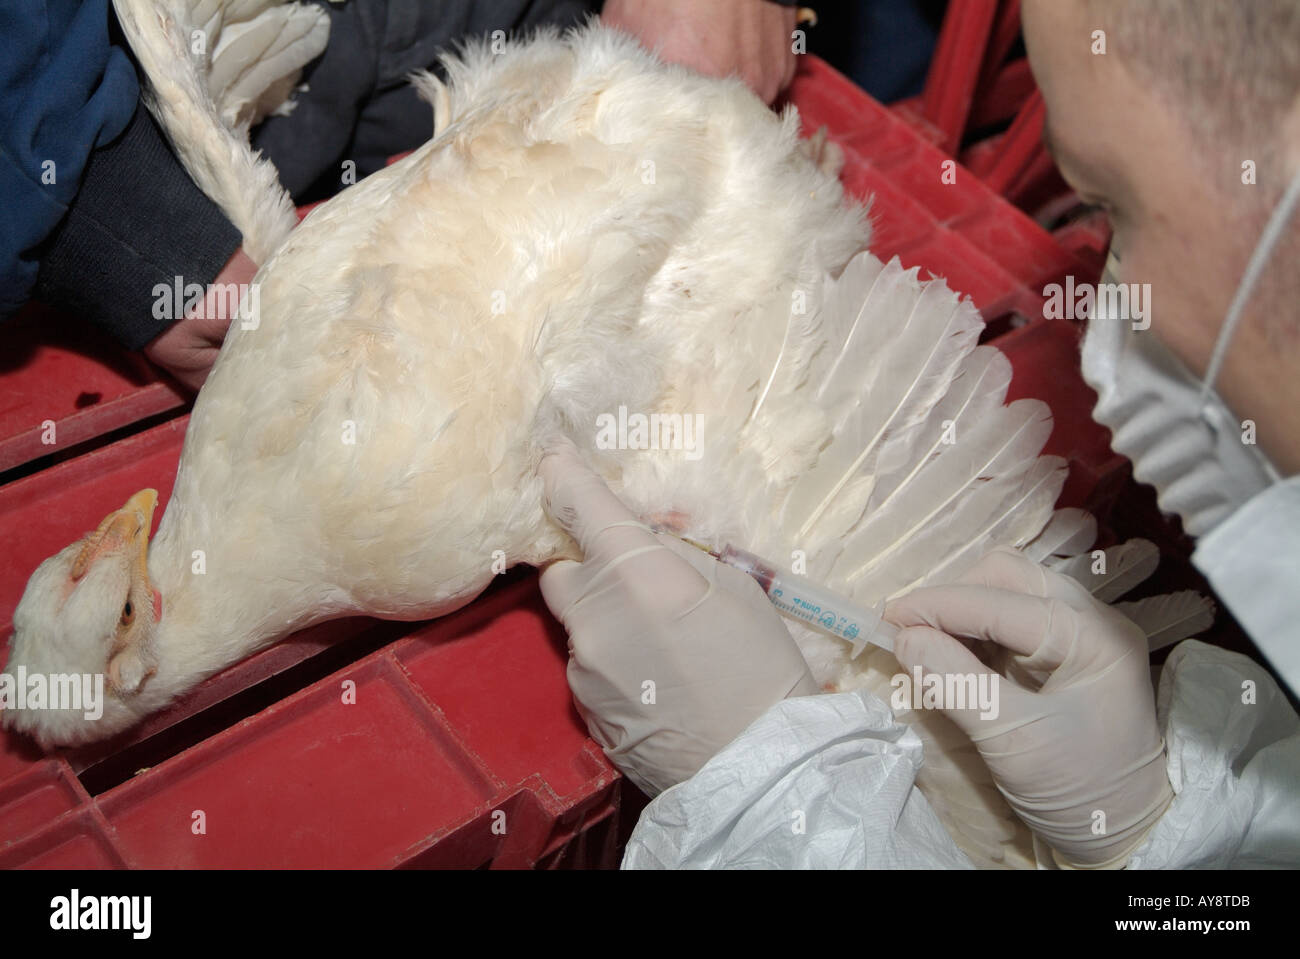 Ministère de l'Agriculture Vétérinaire prélevant un échantillon de sang de poulet Cobb pour tester pour le virus H5N1 de la grippe aviaire Banque D'Images